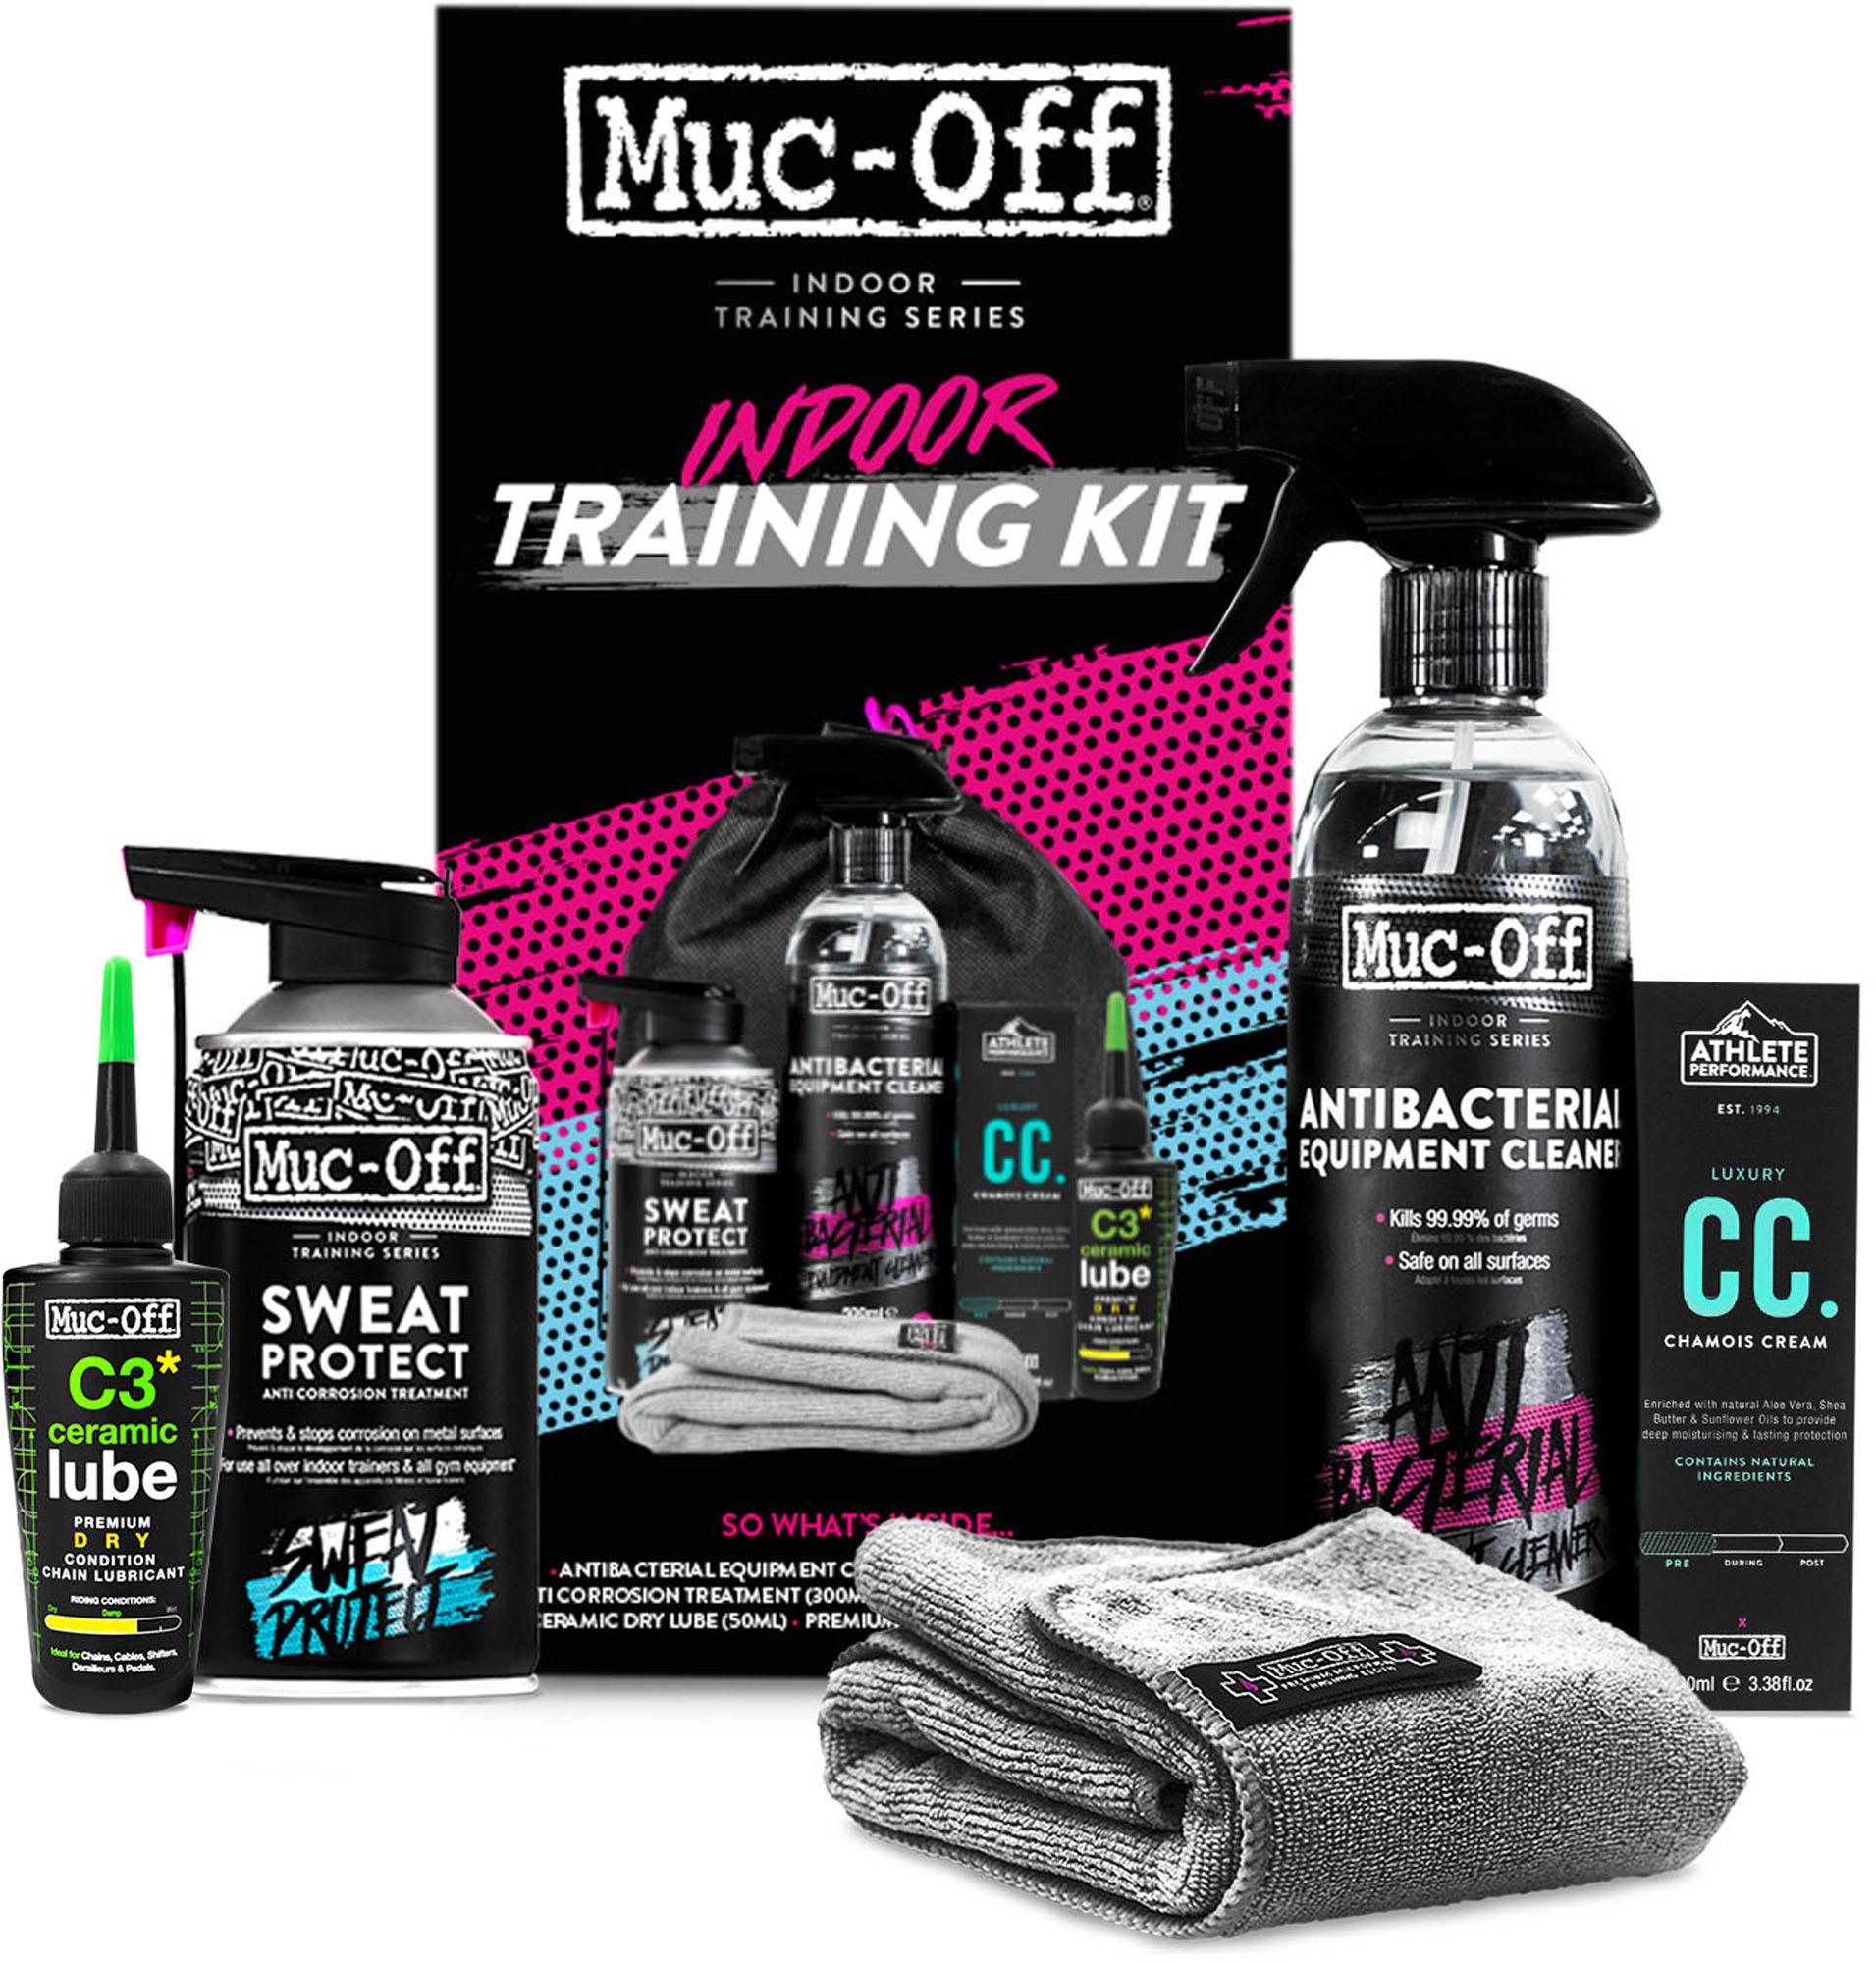 Muc-off Indoor Training Kit - Black